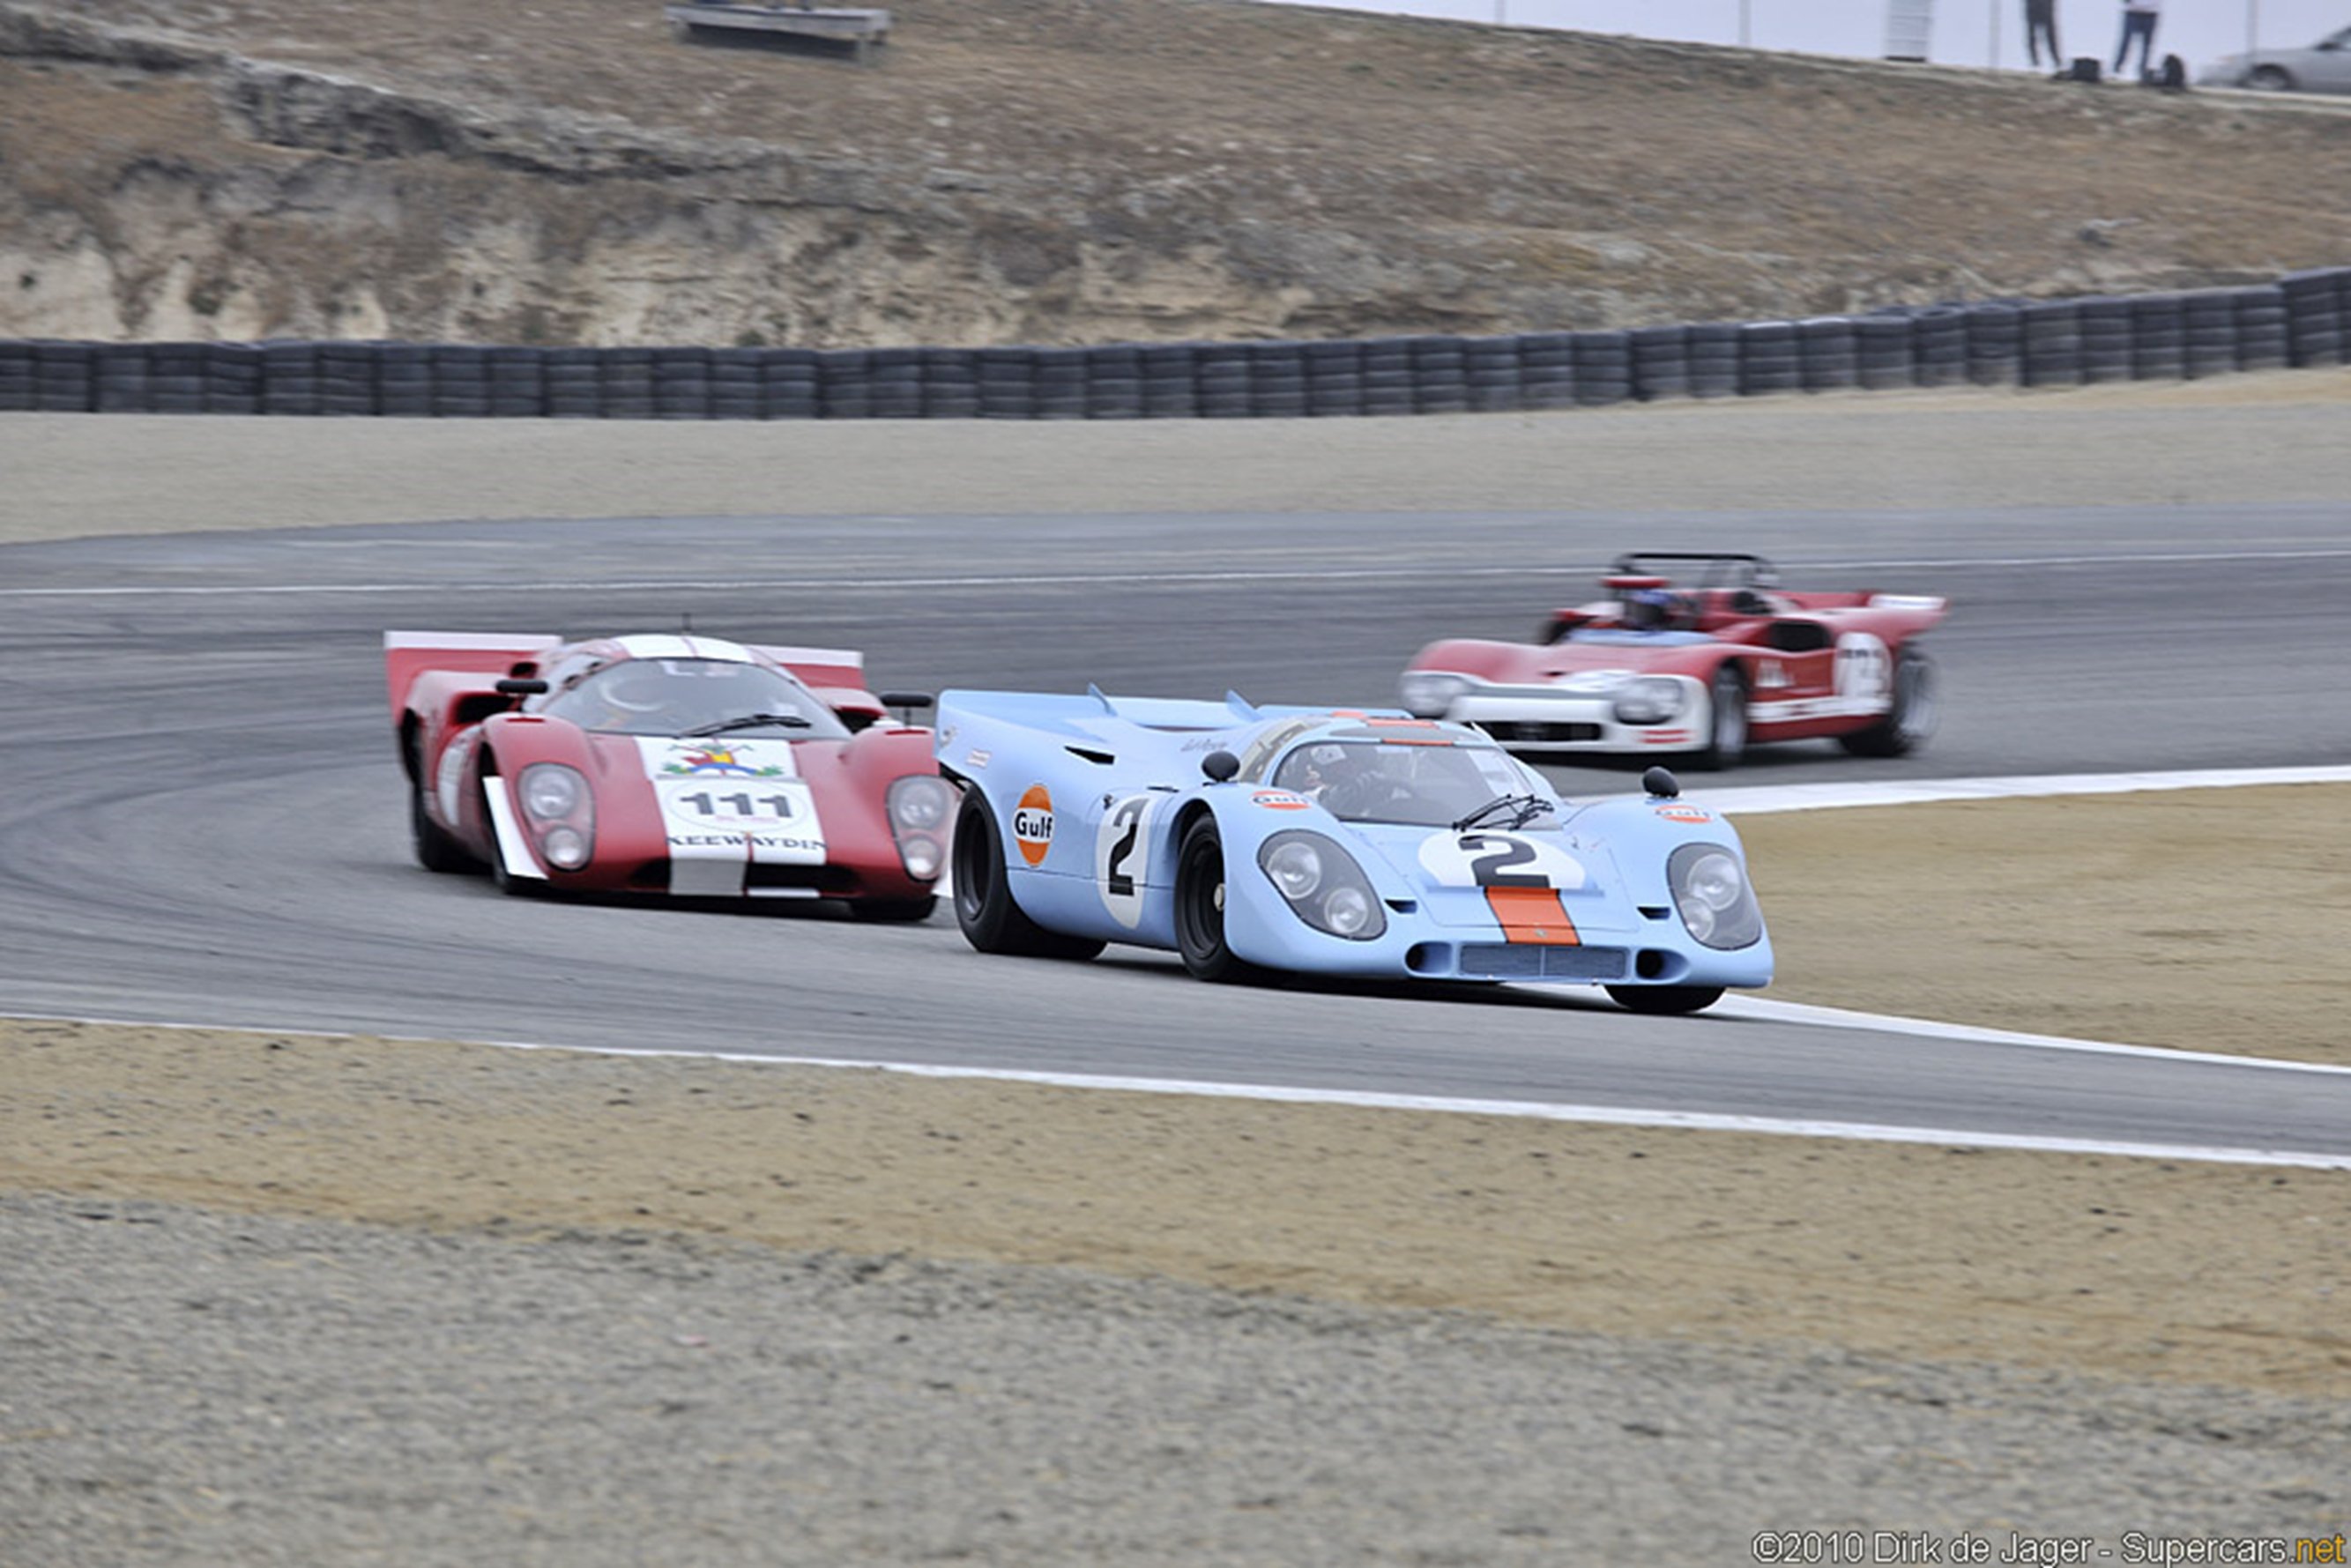 race, Car, Racing, Porsche, Classic, Lemans, Wins, Gulf Wallpaper